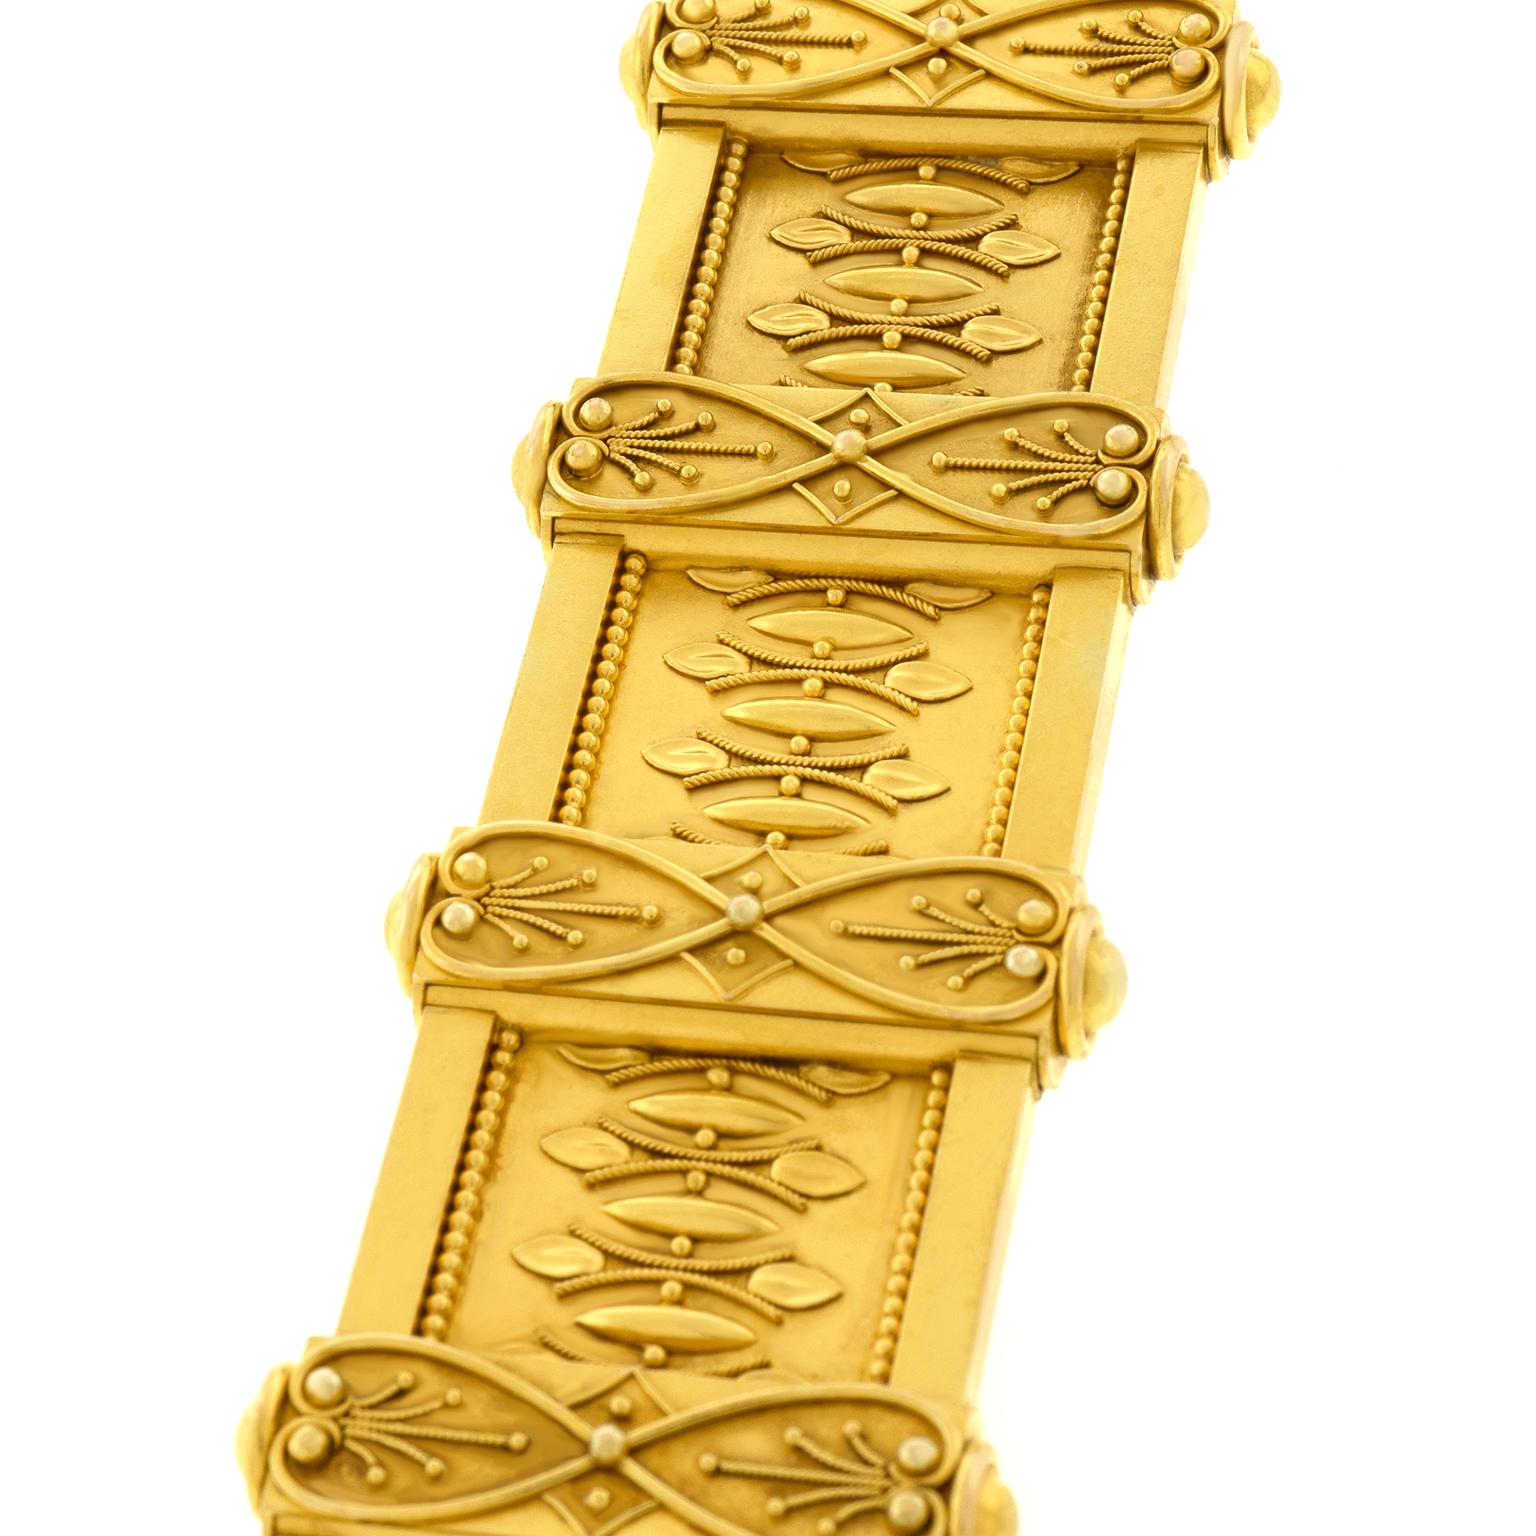 Antique Renaissance Revival Gold Bracelet 1